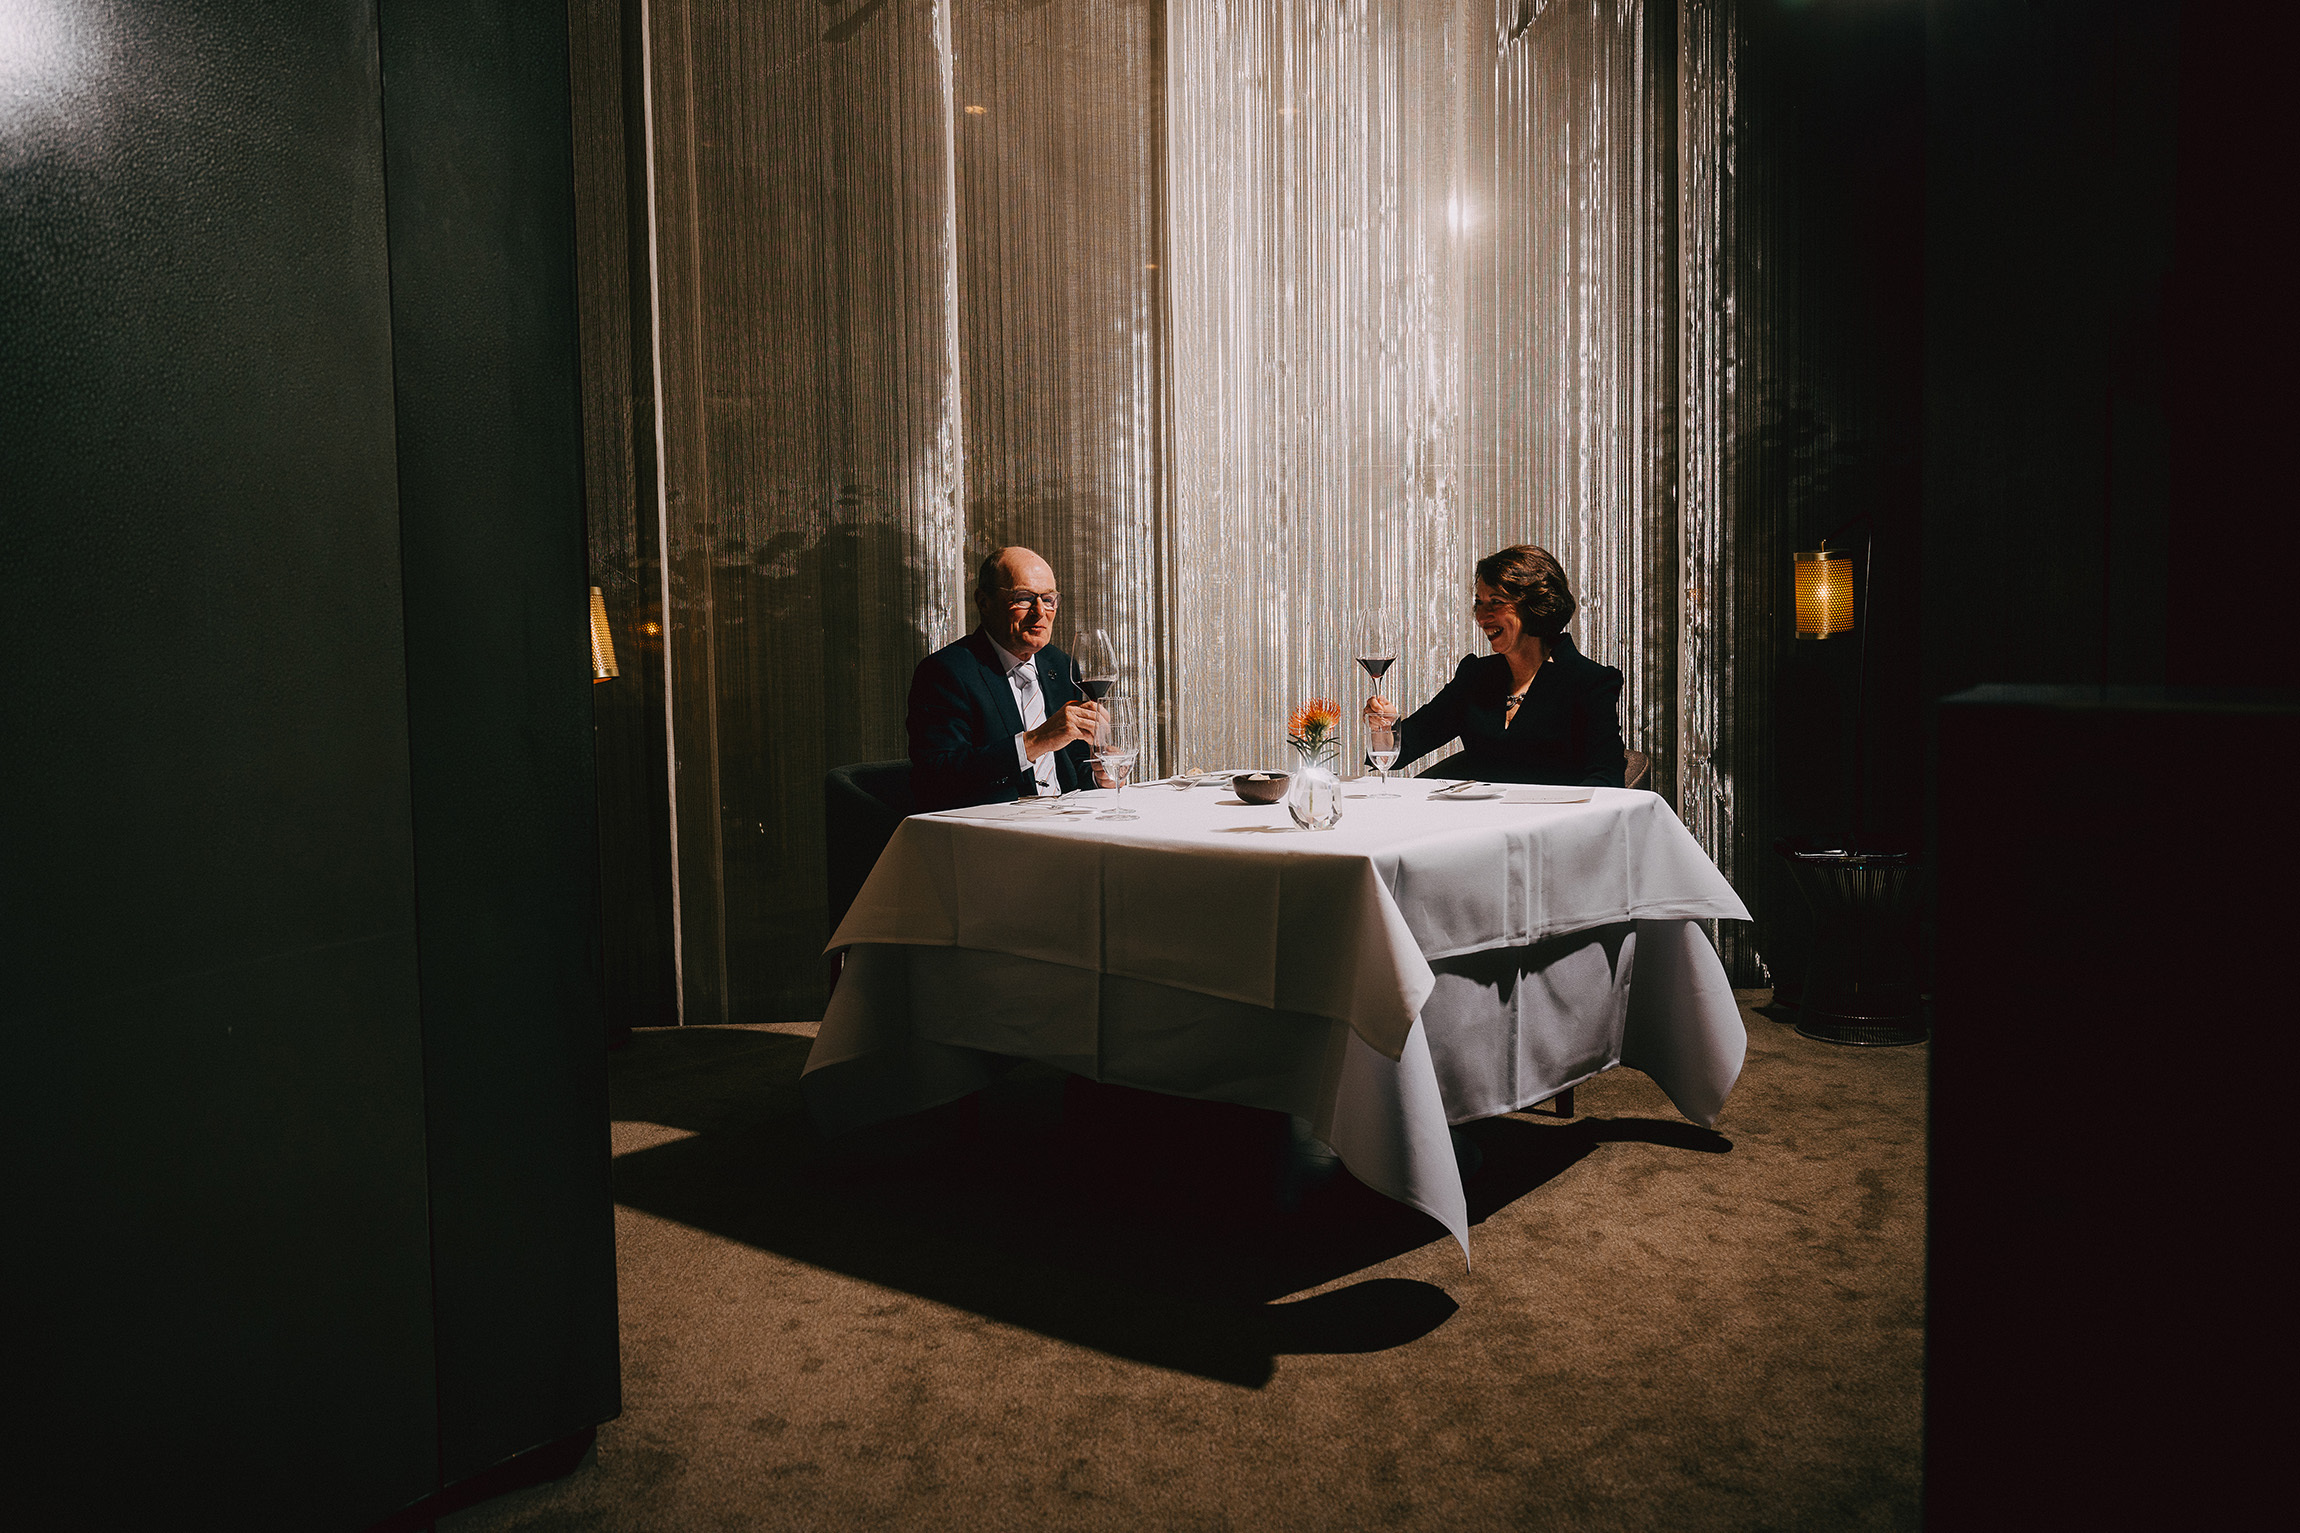 Foto von zwei Personen an einem gedeckten Tisch vor einem silbernen Vorhang. Die beiden heben ein Rotweinglas und blicken einander an.